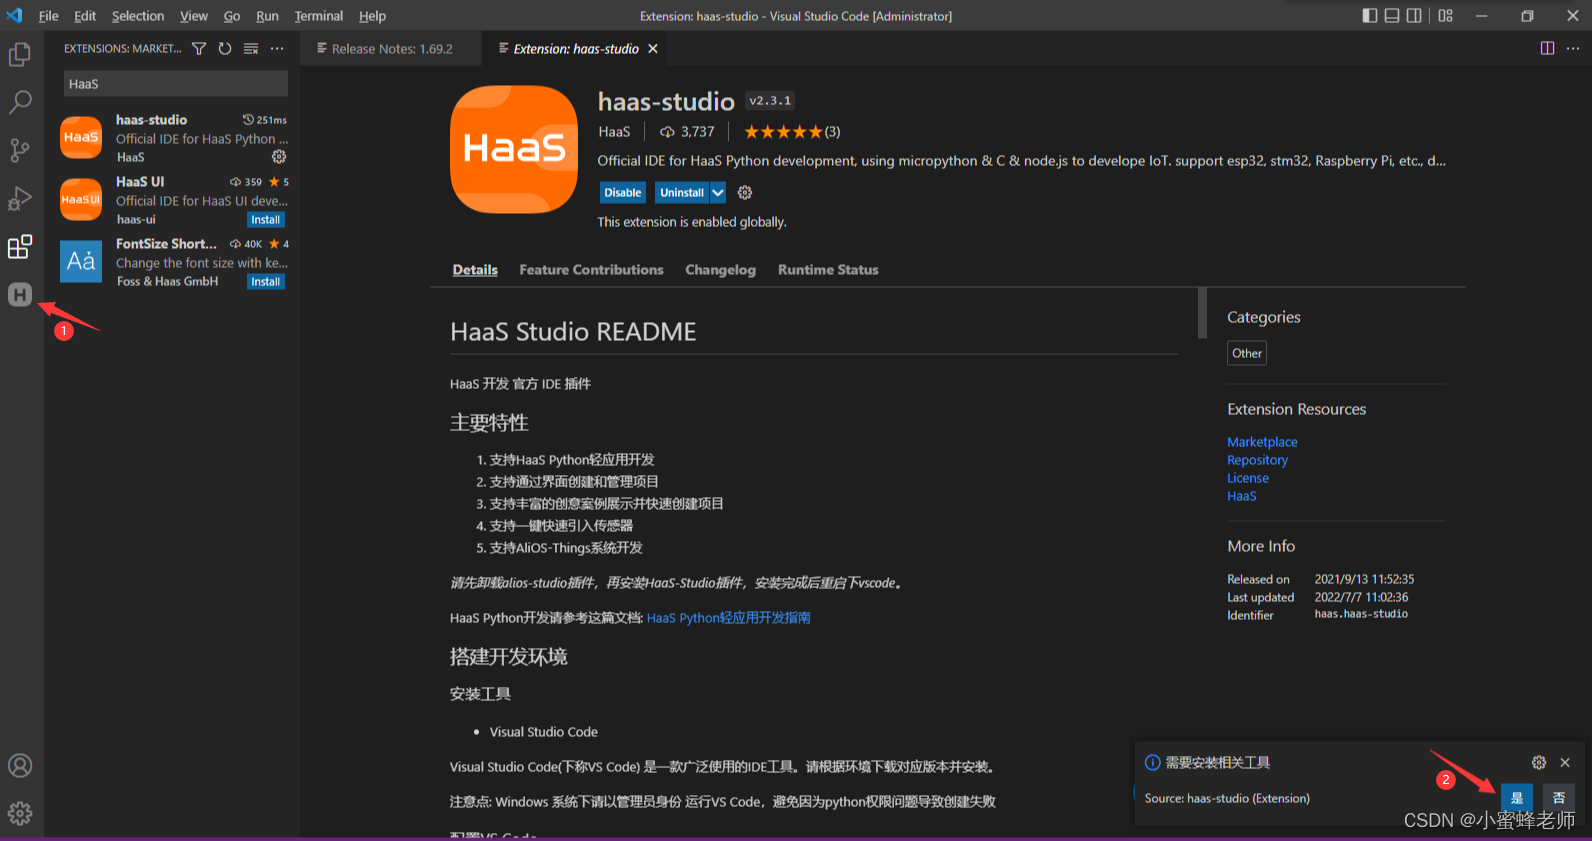 HaaS学习笔记 | 最详细的HaaS Python轻应用开发快速入门教程